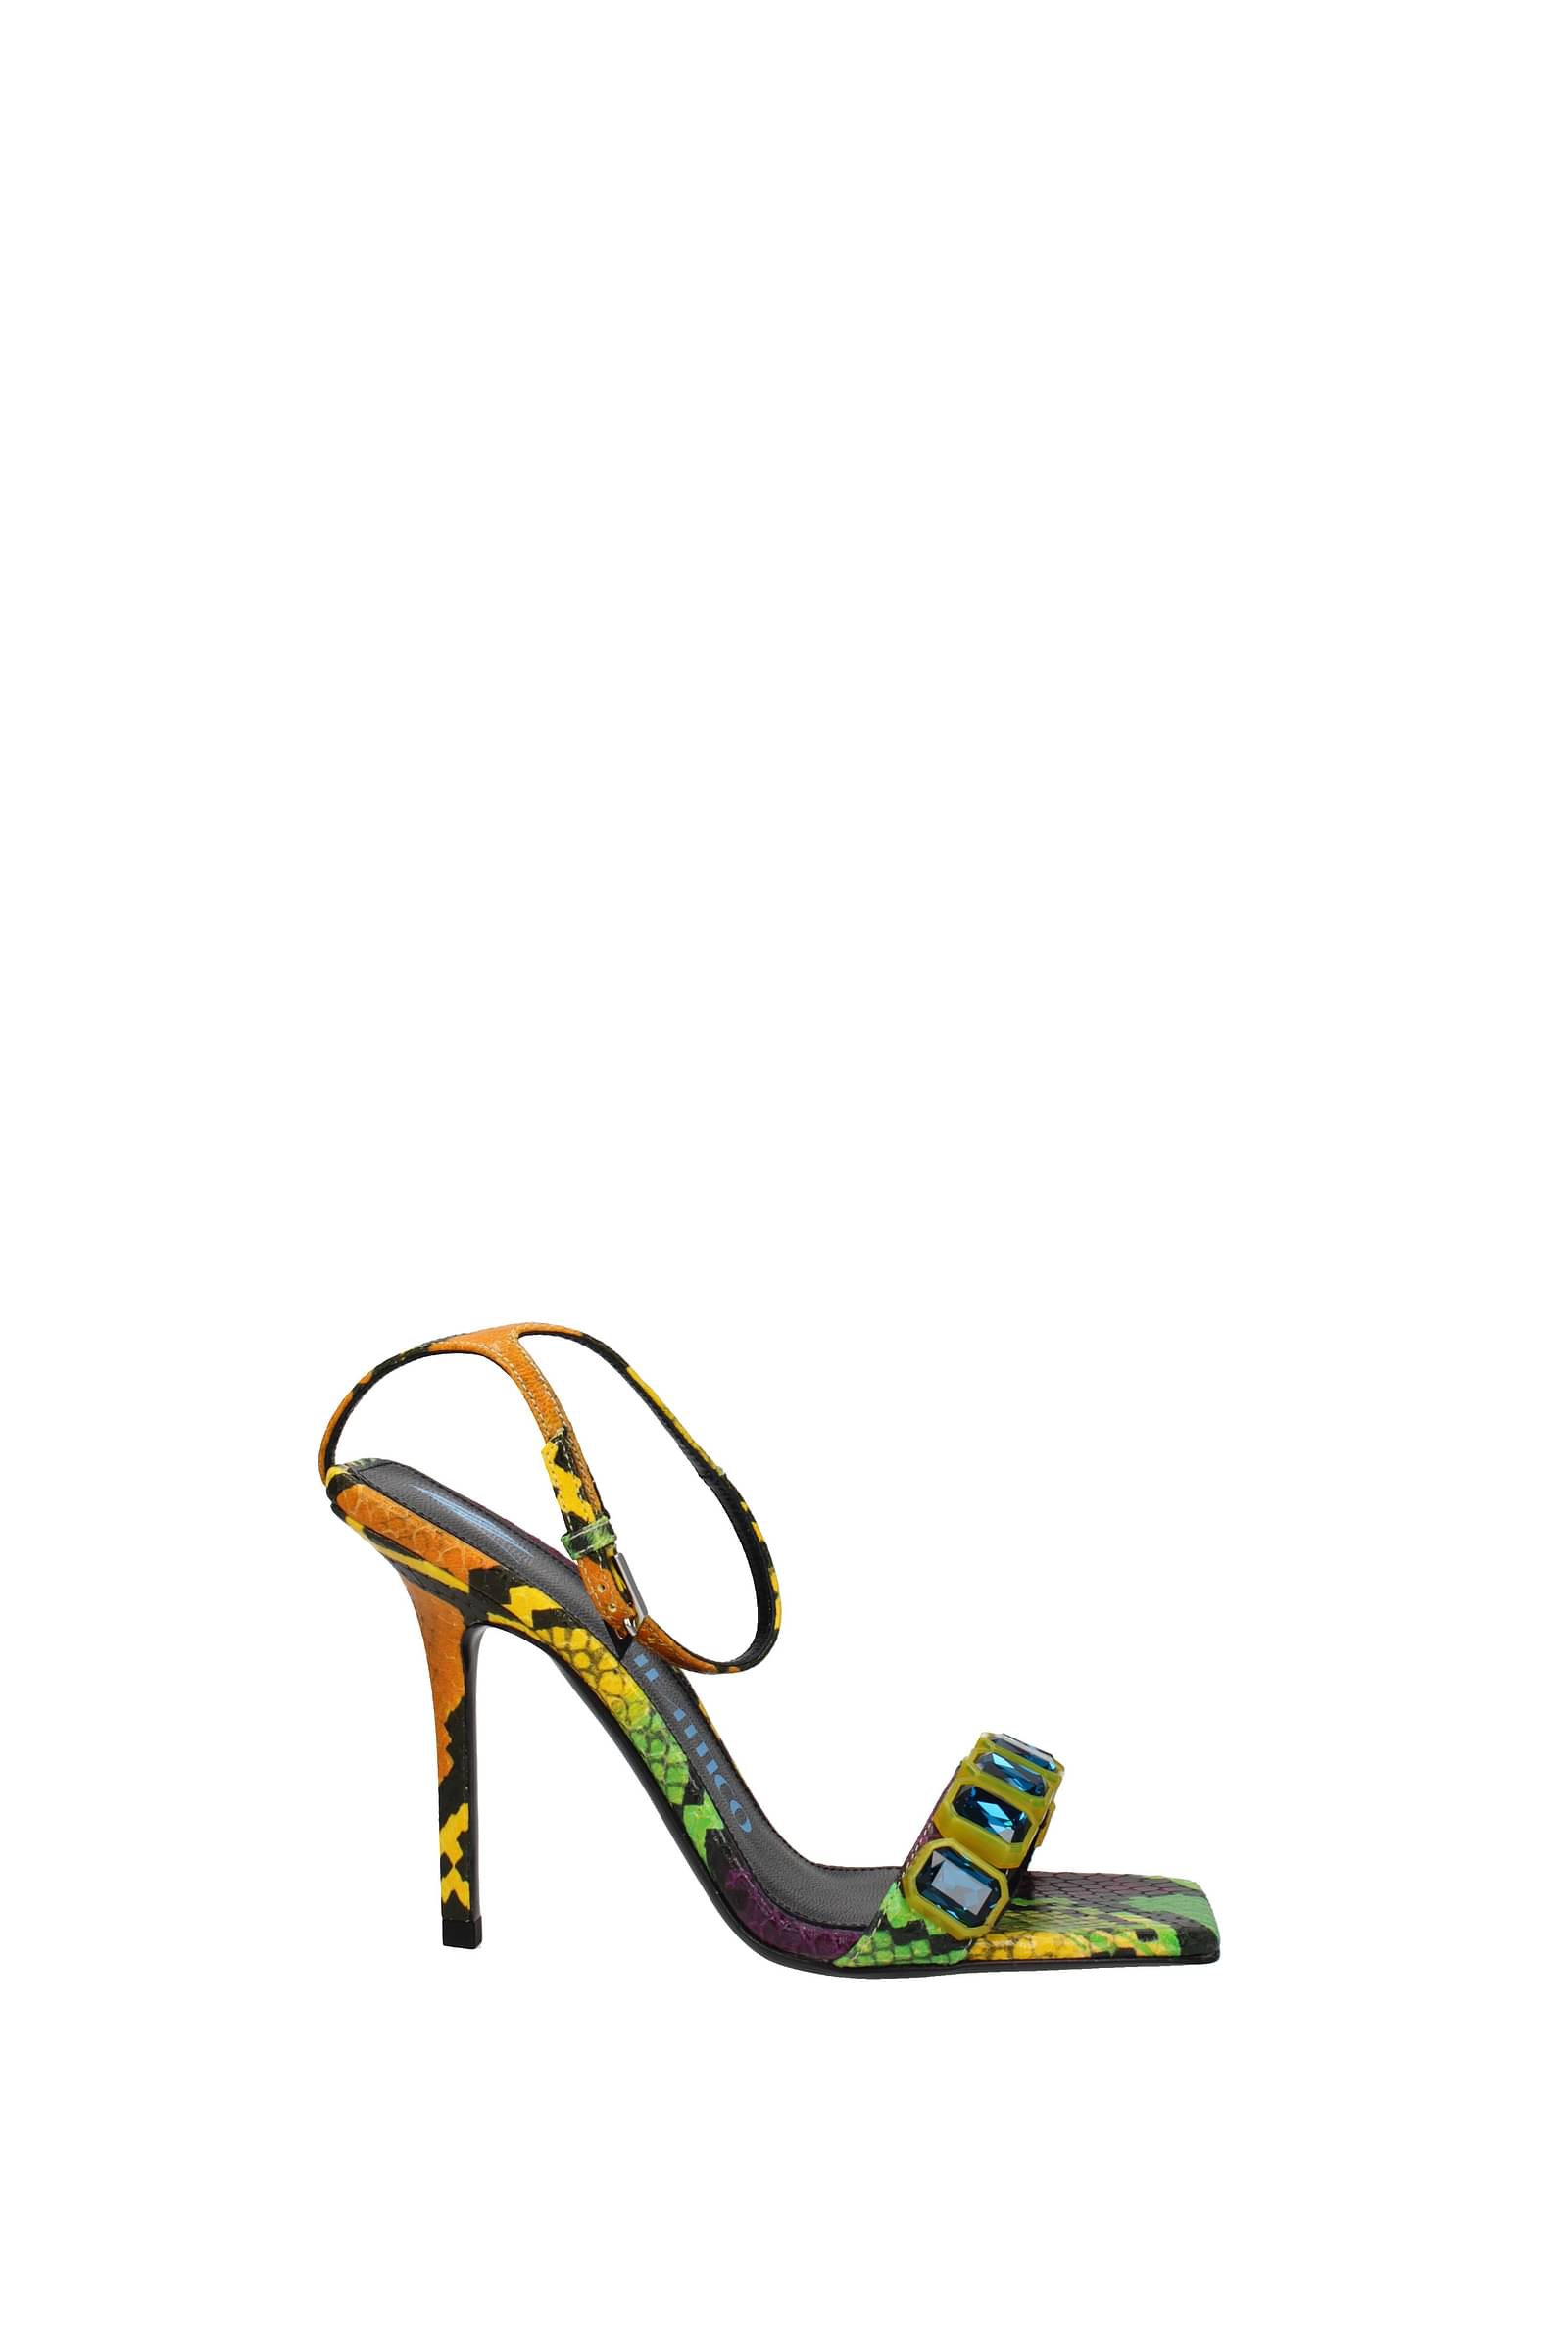 BCBG Girls Snake Print Multicolor Ribbed Heel Platform Sandals Size 8.5 |  eBay